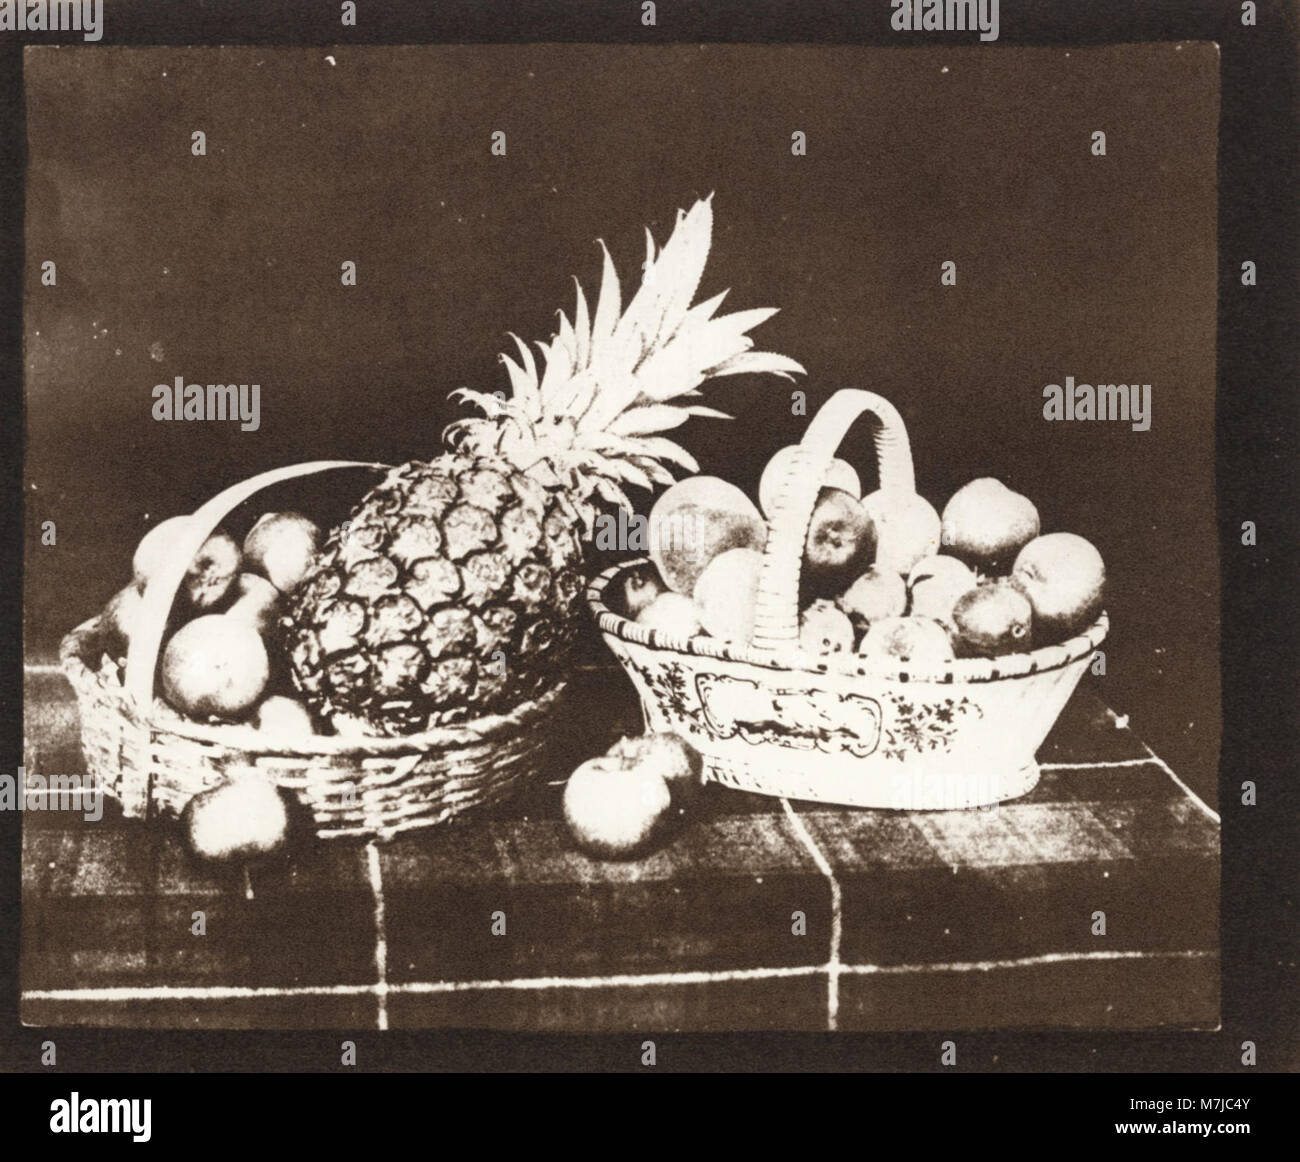 Talbot, William Henry Fox - "Früchte", "aus der Stift der Natur" (Zeno fotografie) Foto Stock